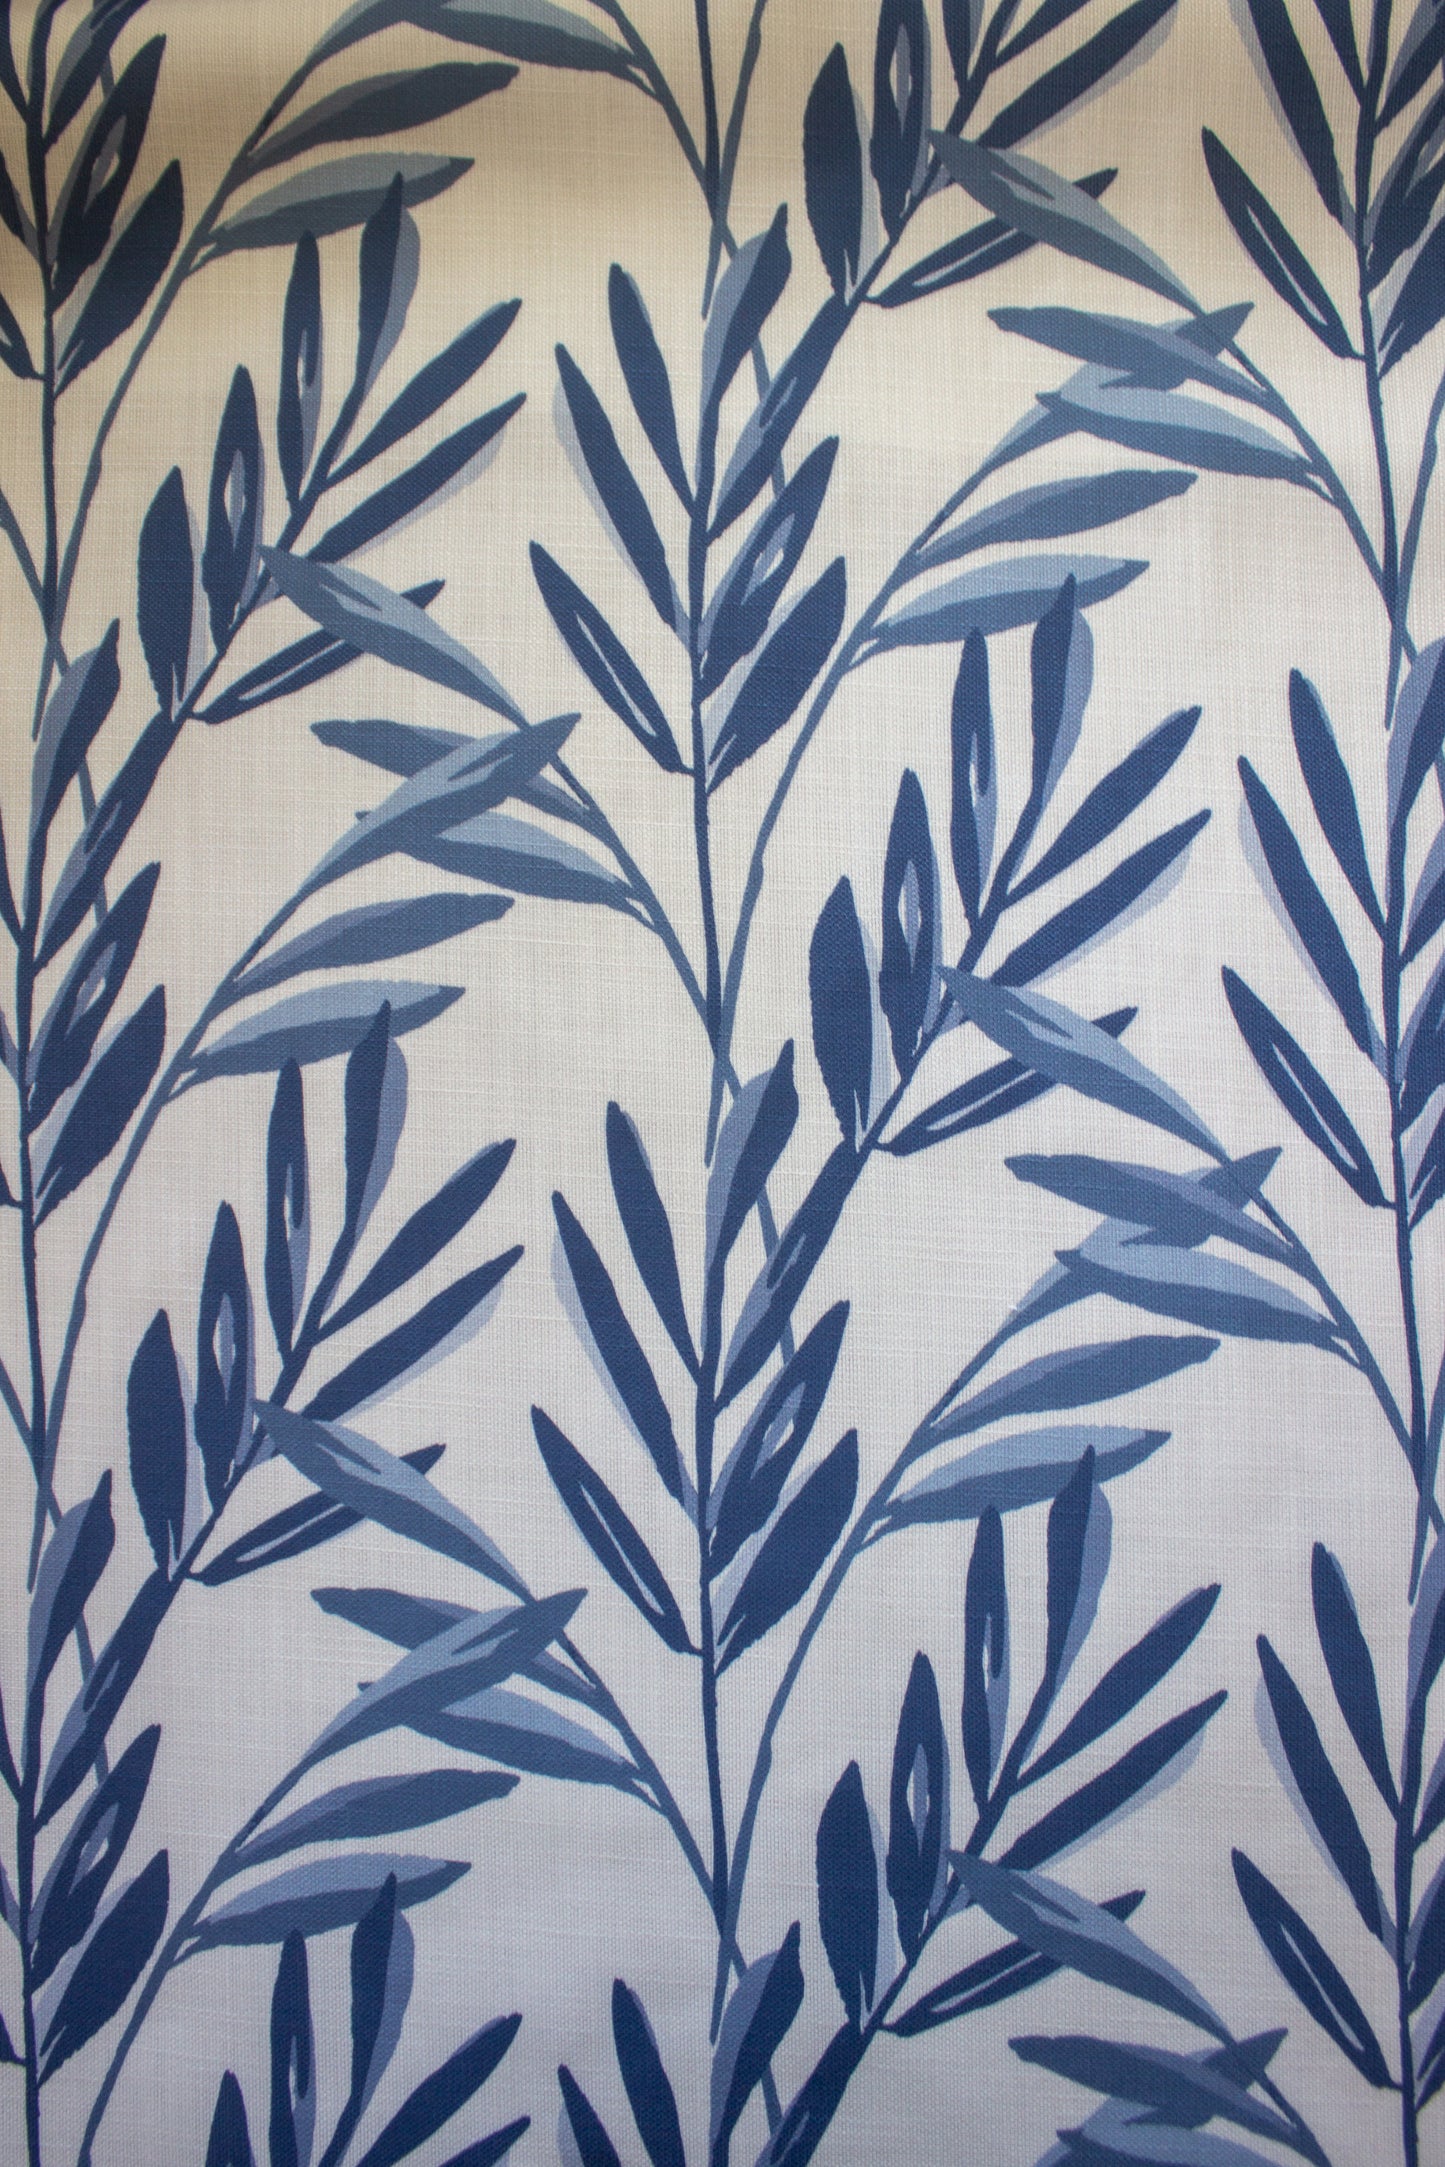 Botanical Fabric | Blue